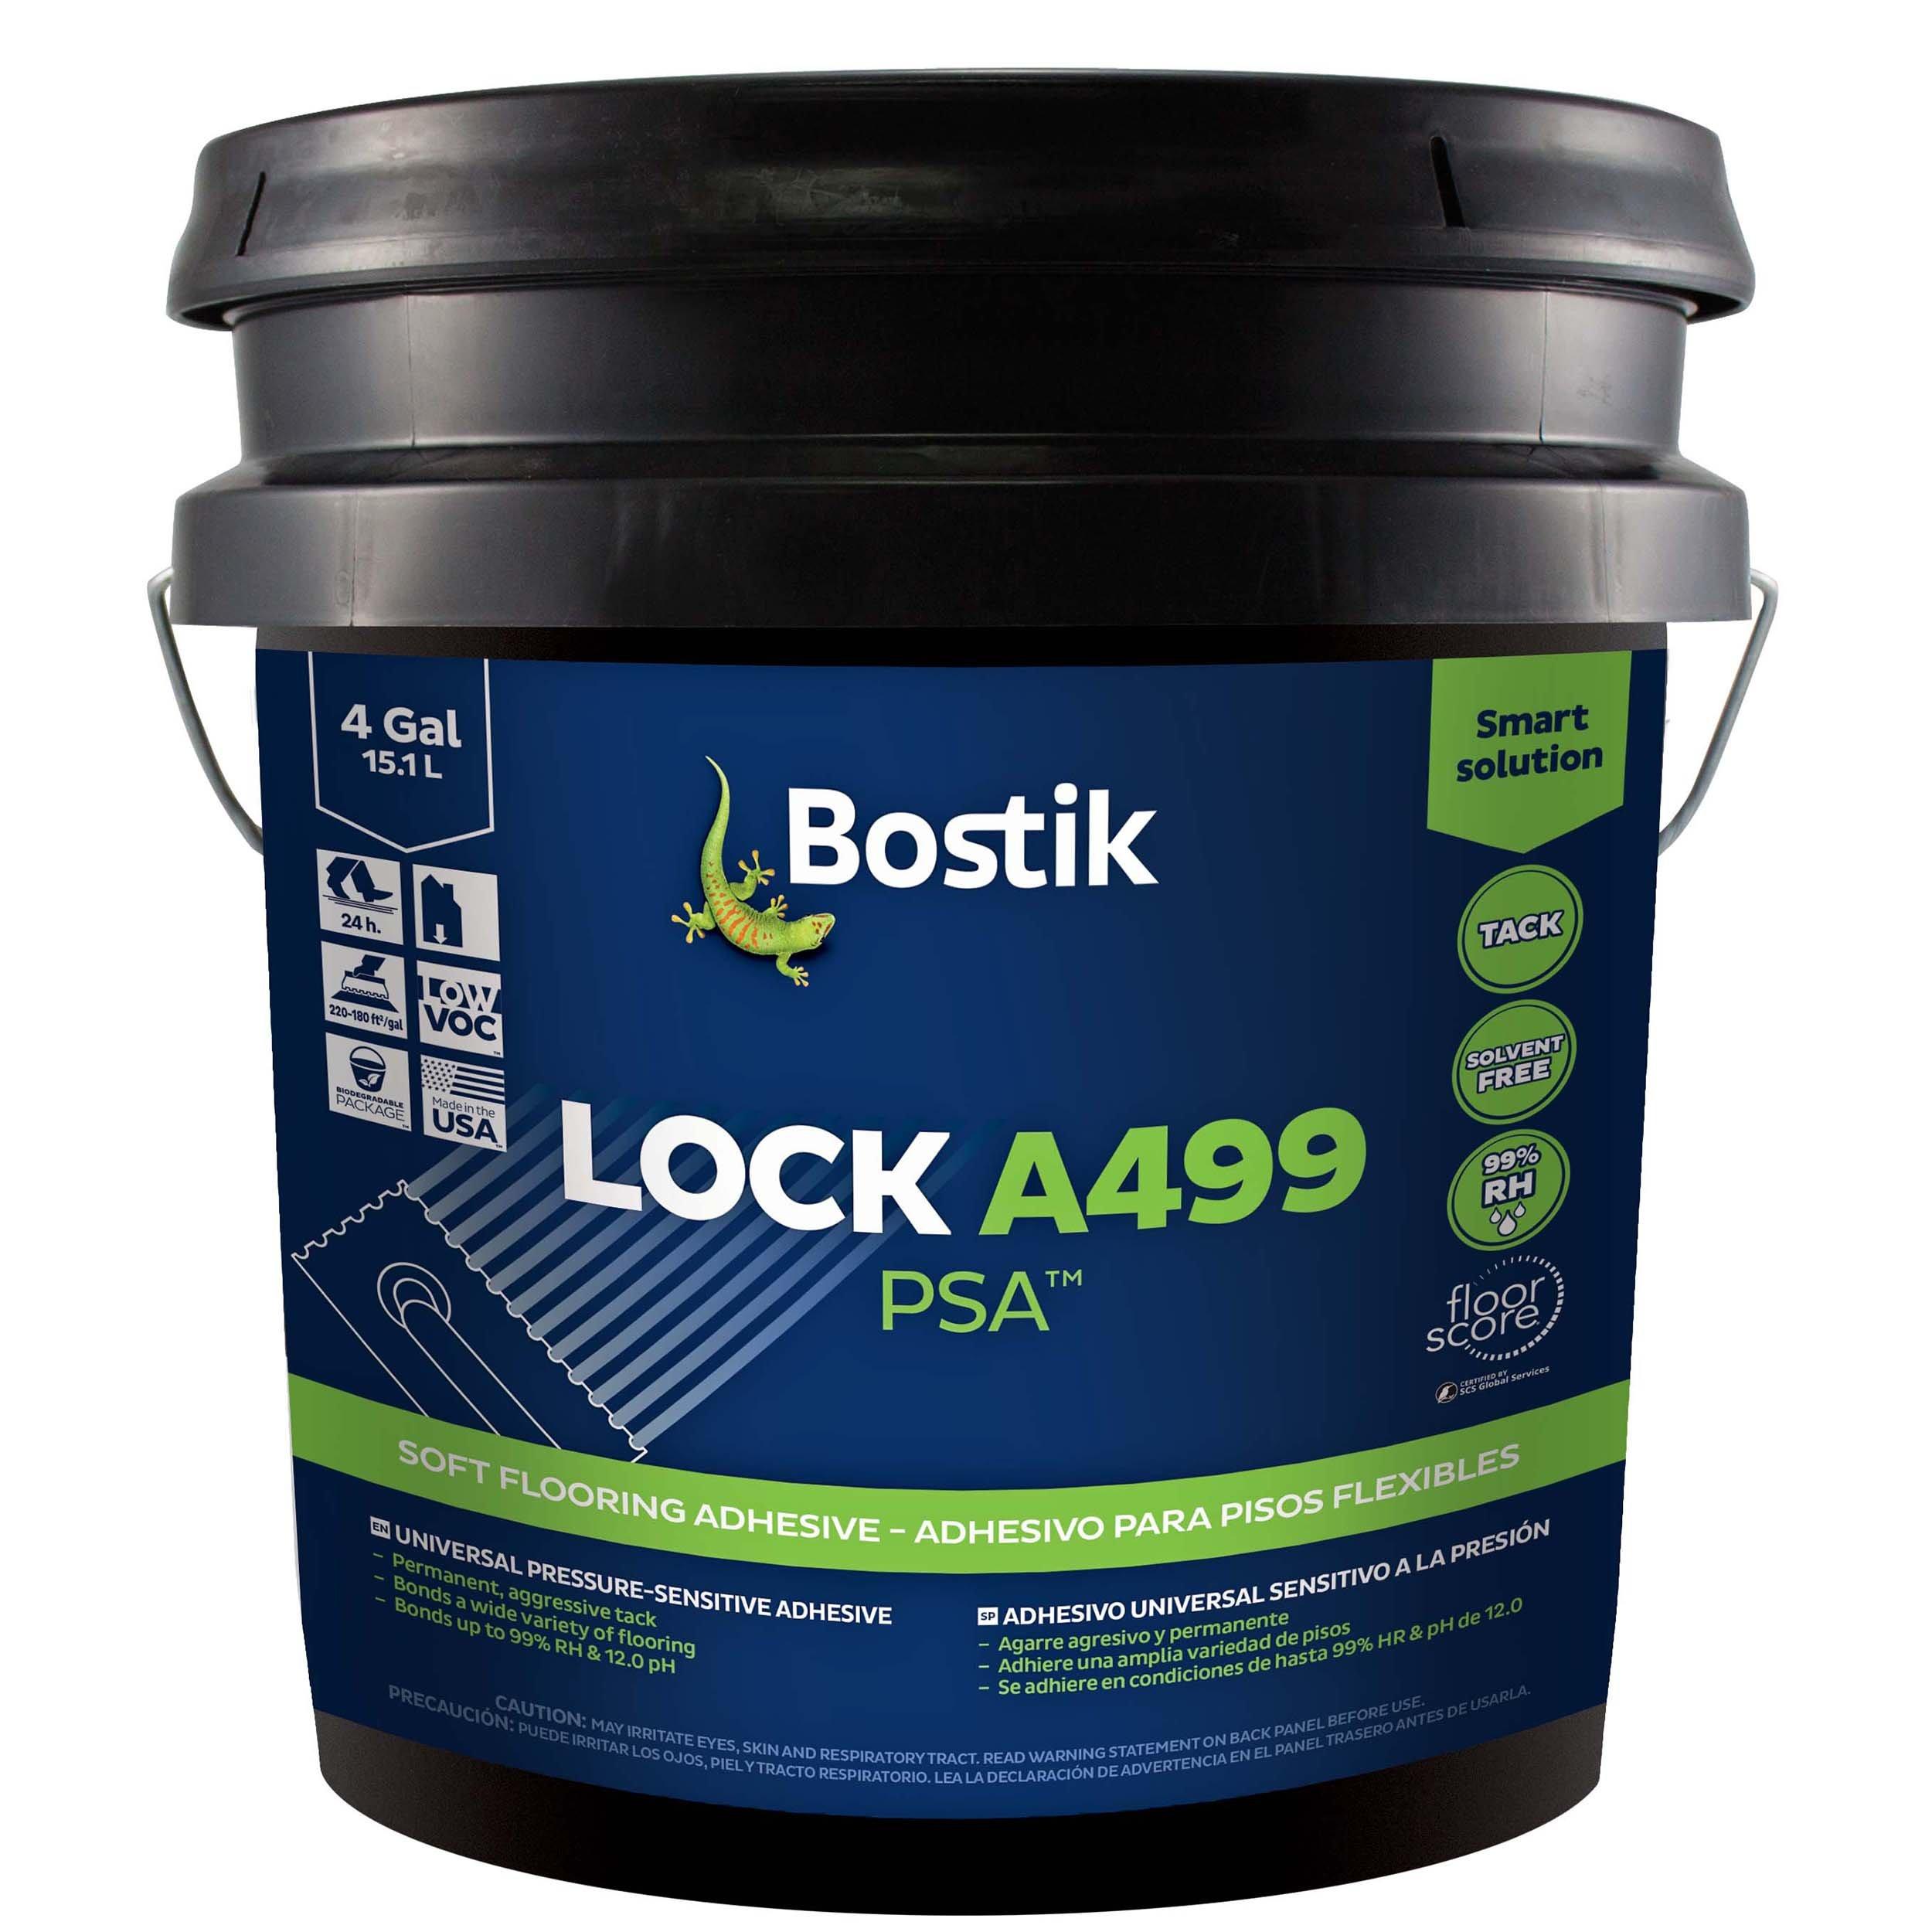 Bostik Lock A499 Universal Pressure-Sensitive Adhesive